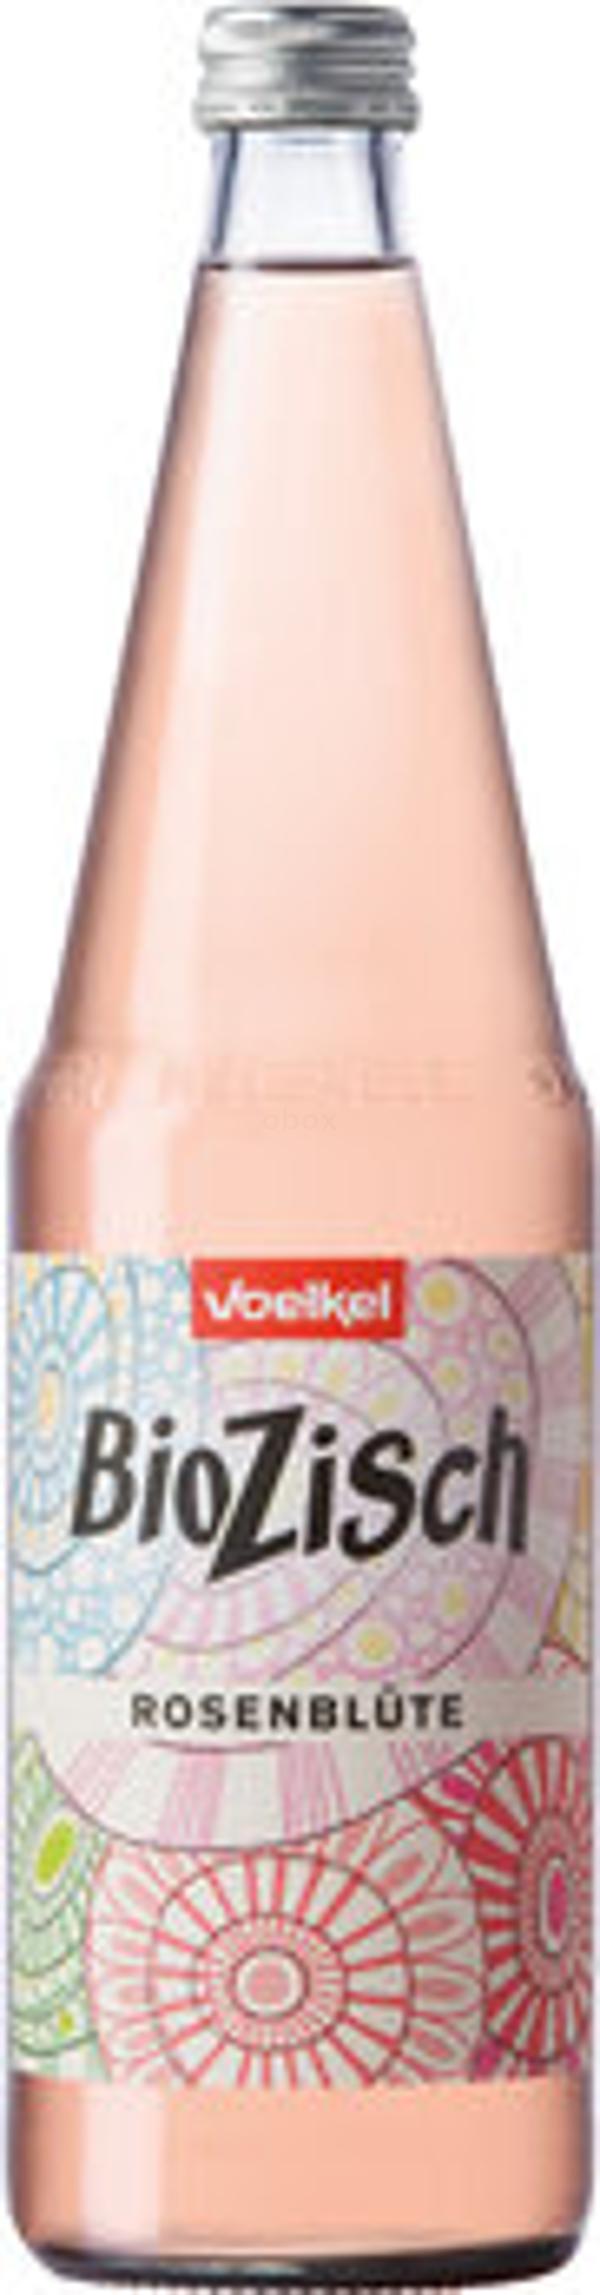 Produktfoto zu BioZisch Rosenblüte